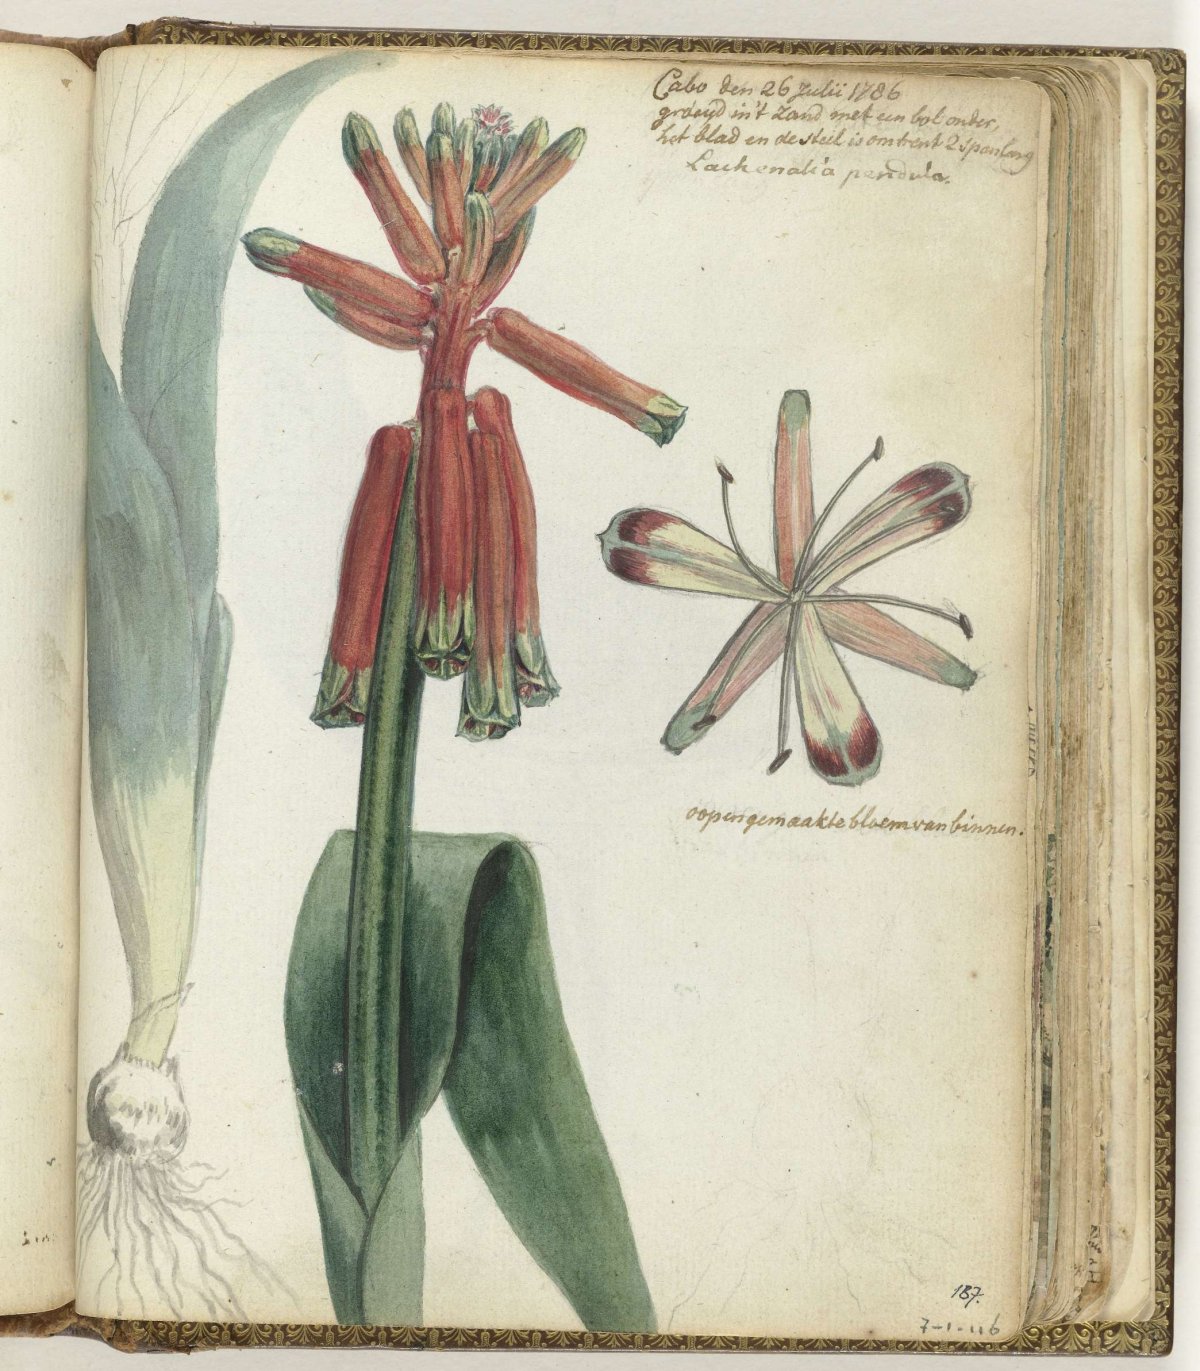 Kaapse bloem, Jan Brandes, 1786